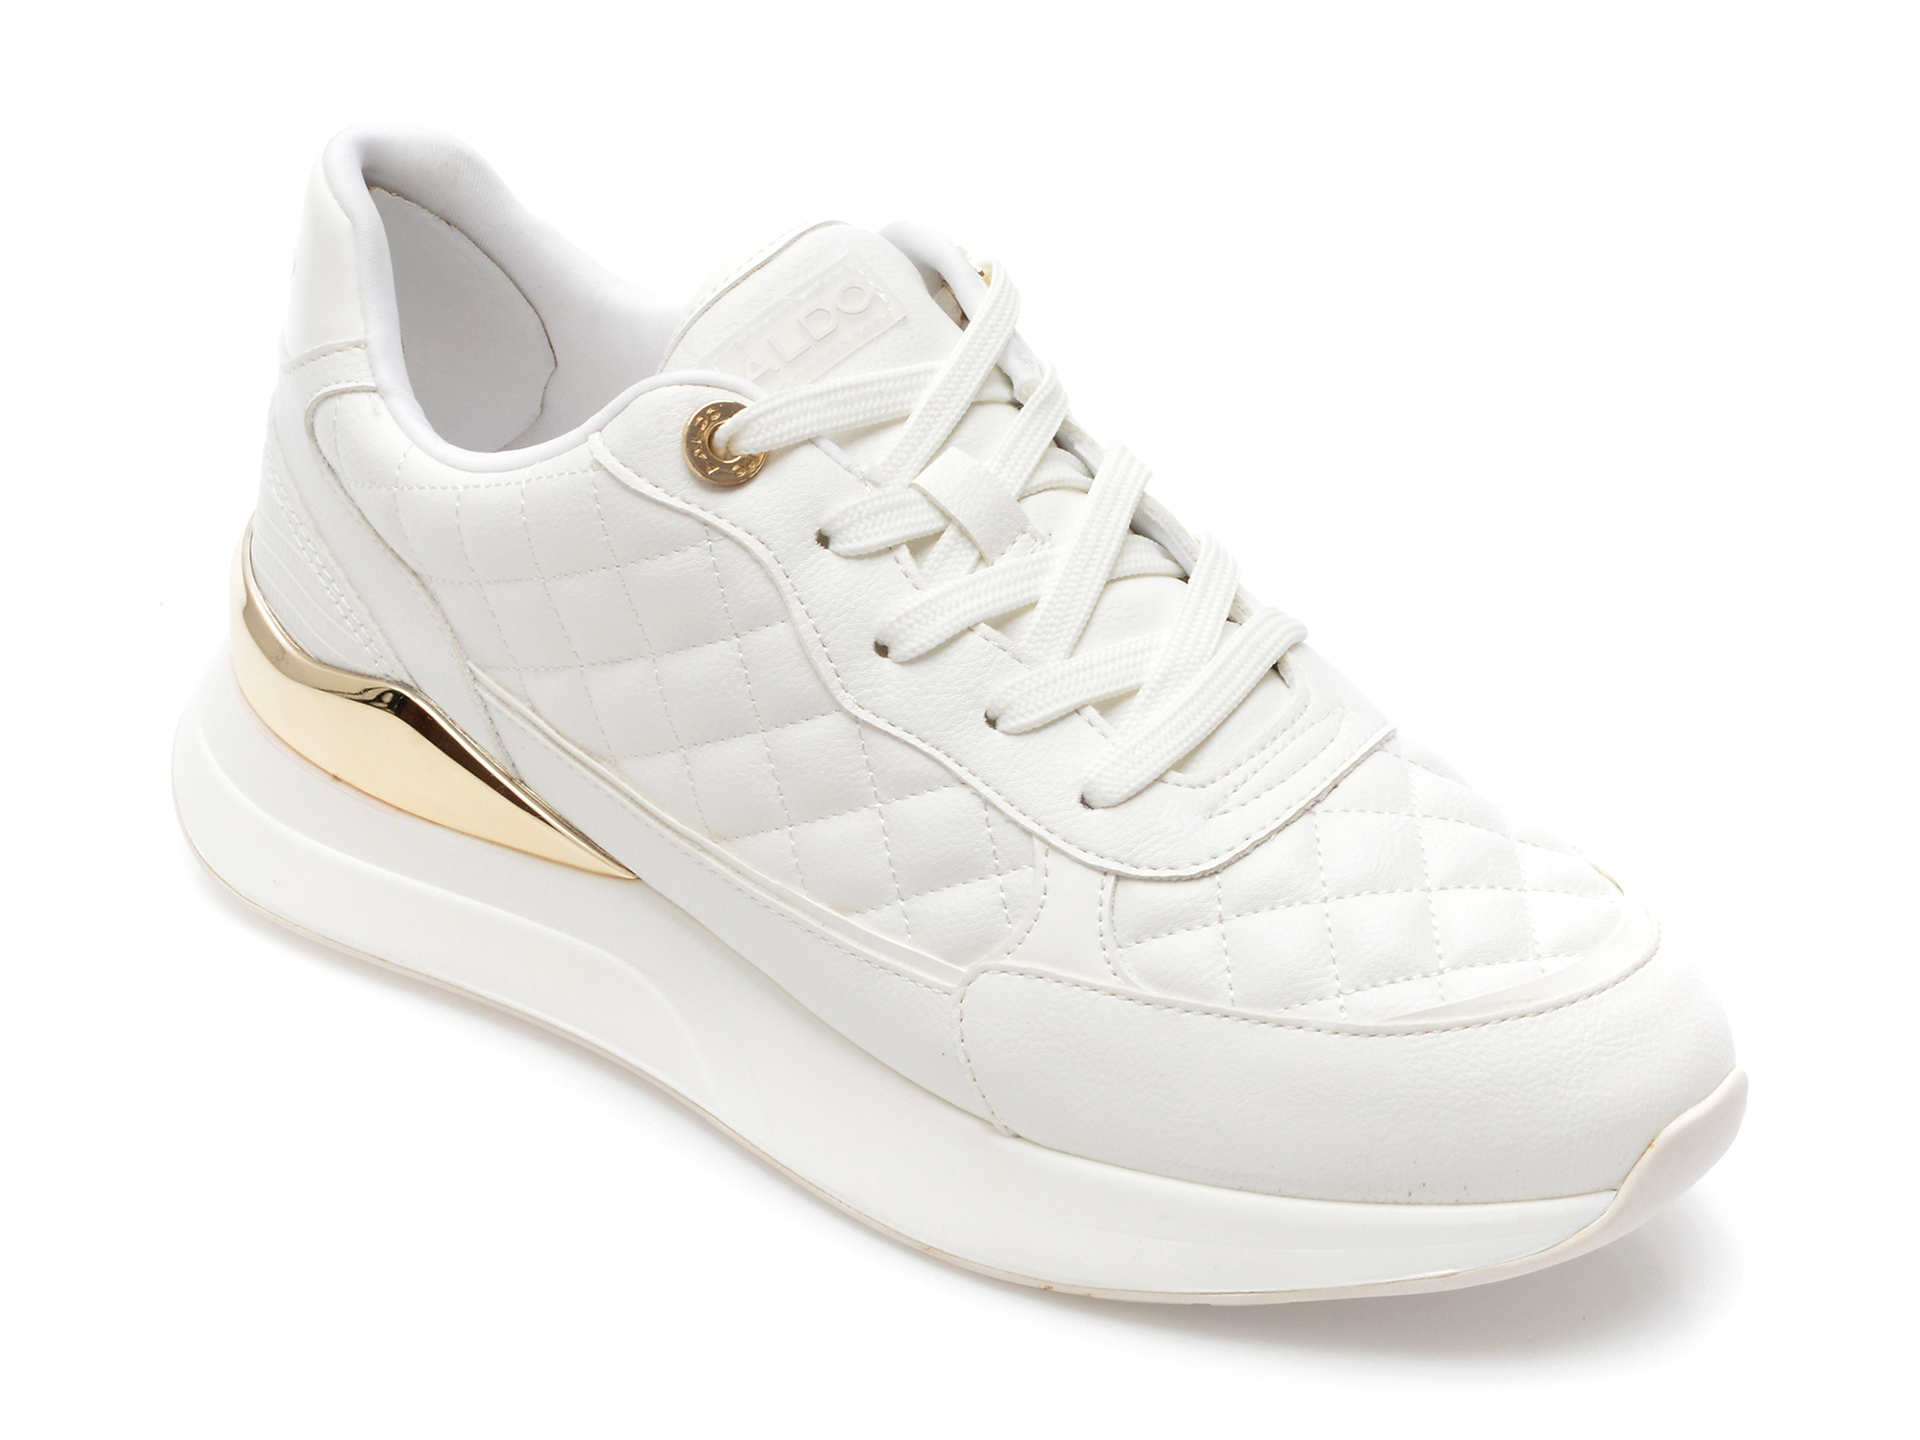 Pantofi ALDO albi, COSMICSTEP100, din piele ecologica femei 2023-03-21